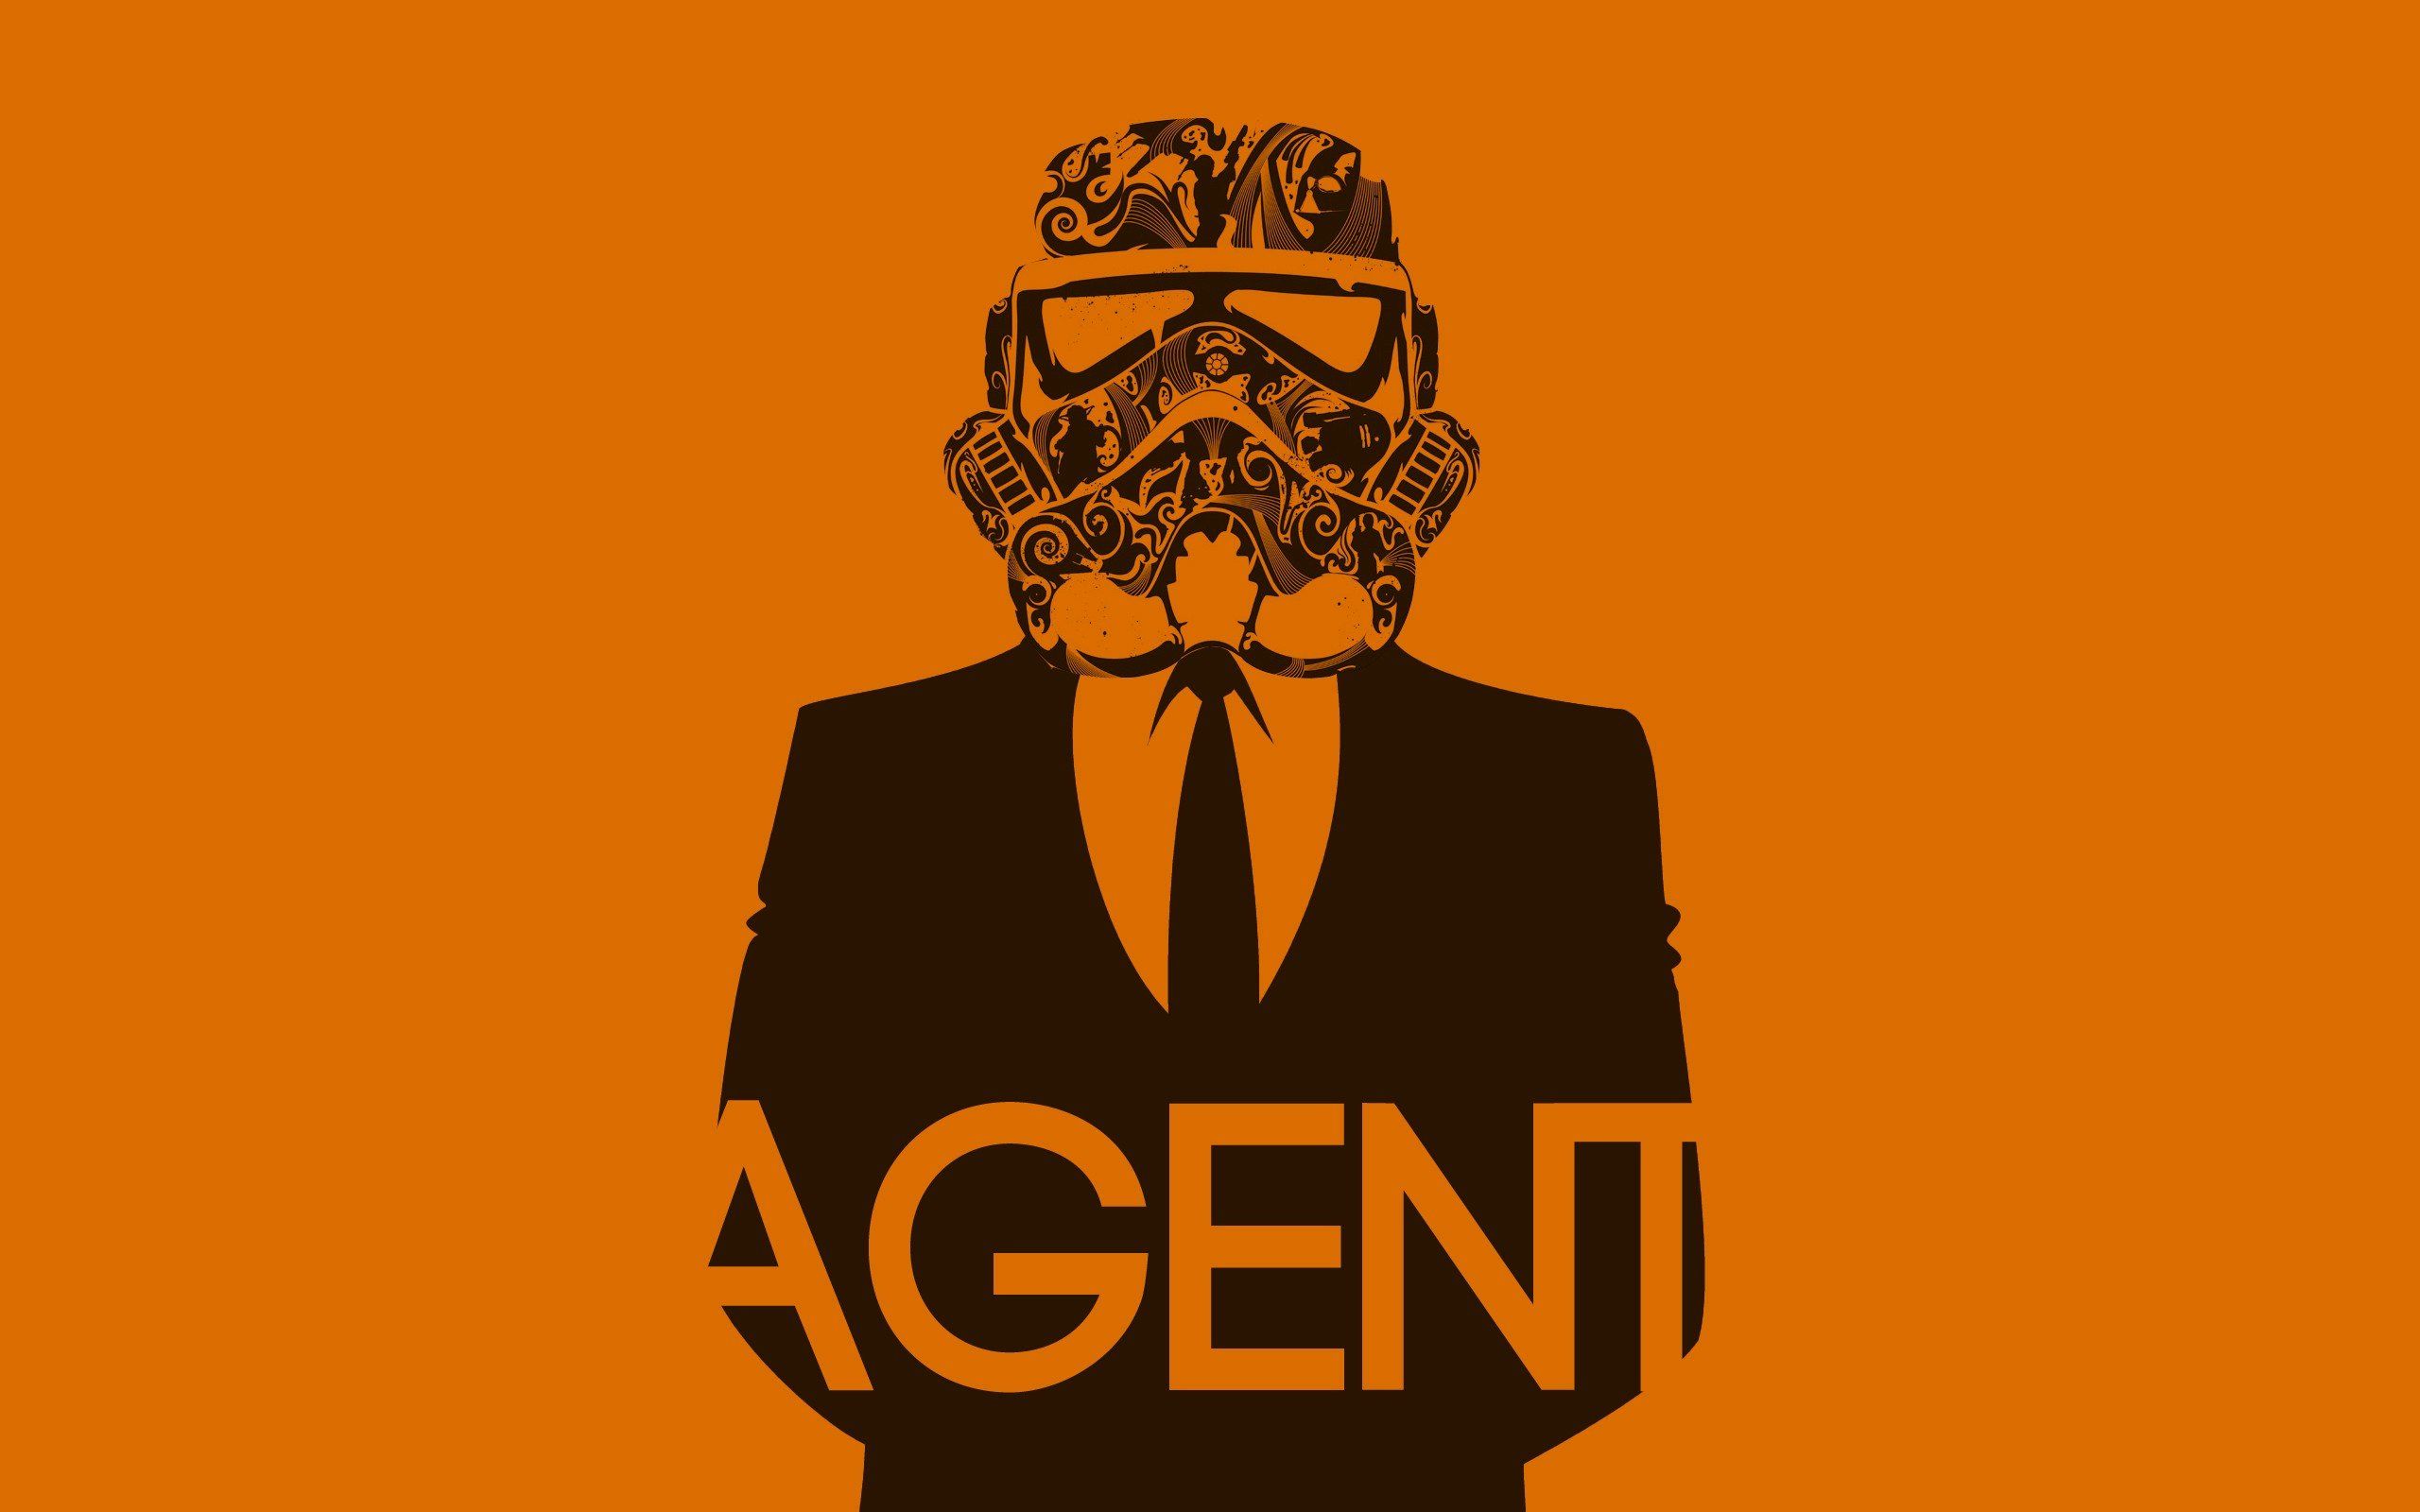 Star Wars stormtroopers agent wallpaper | 2560x1600 | 240219 ...